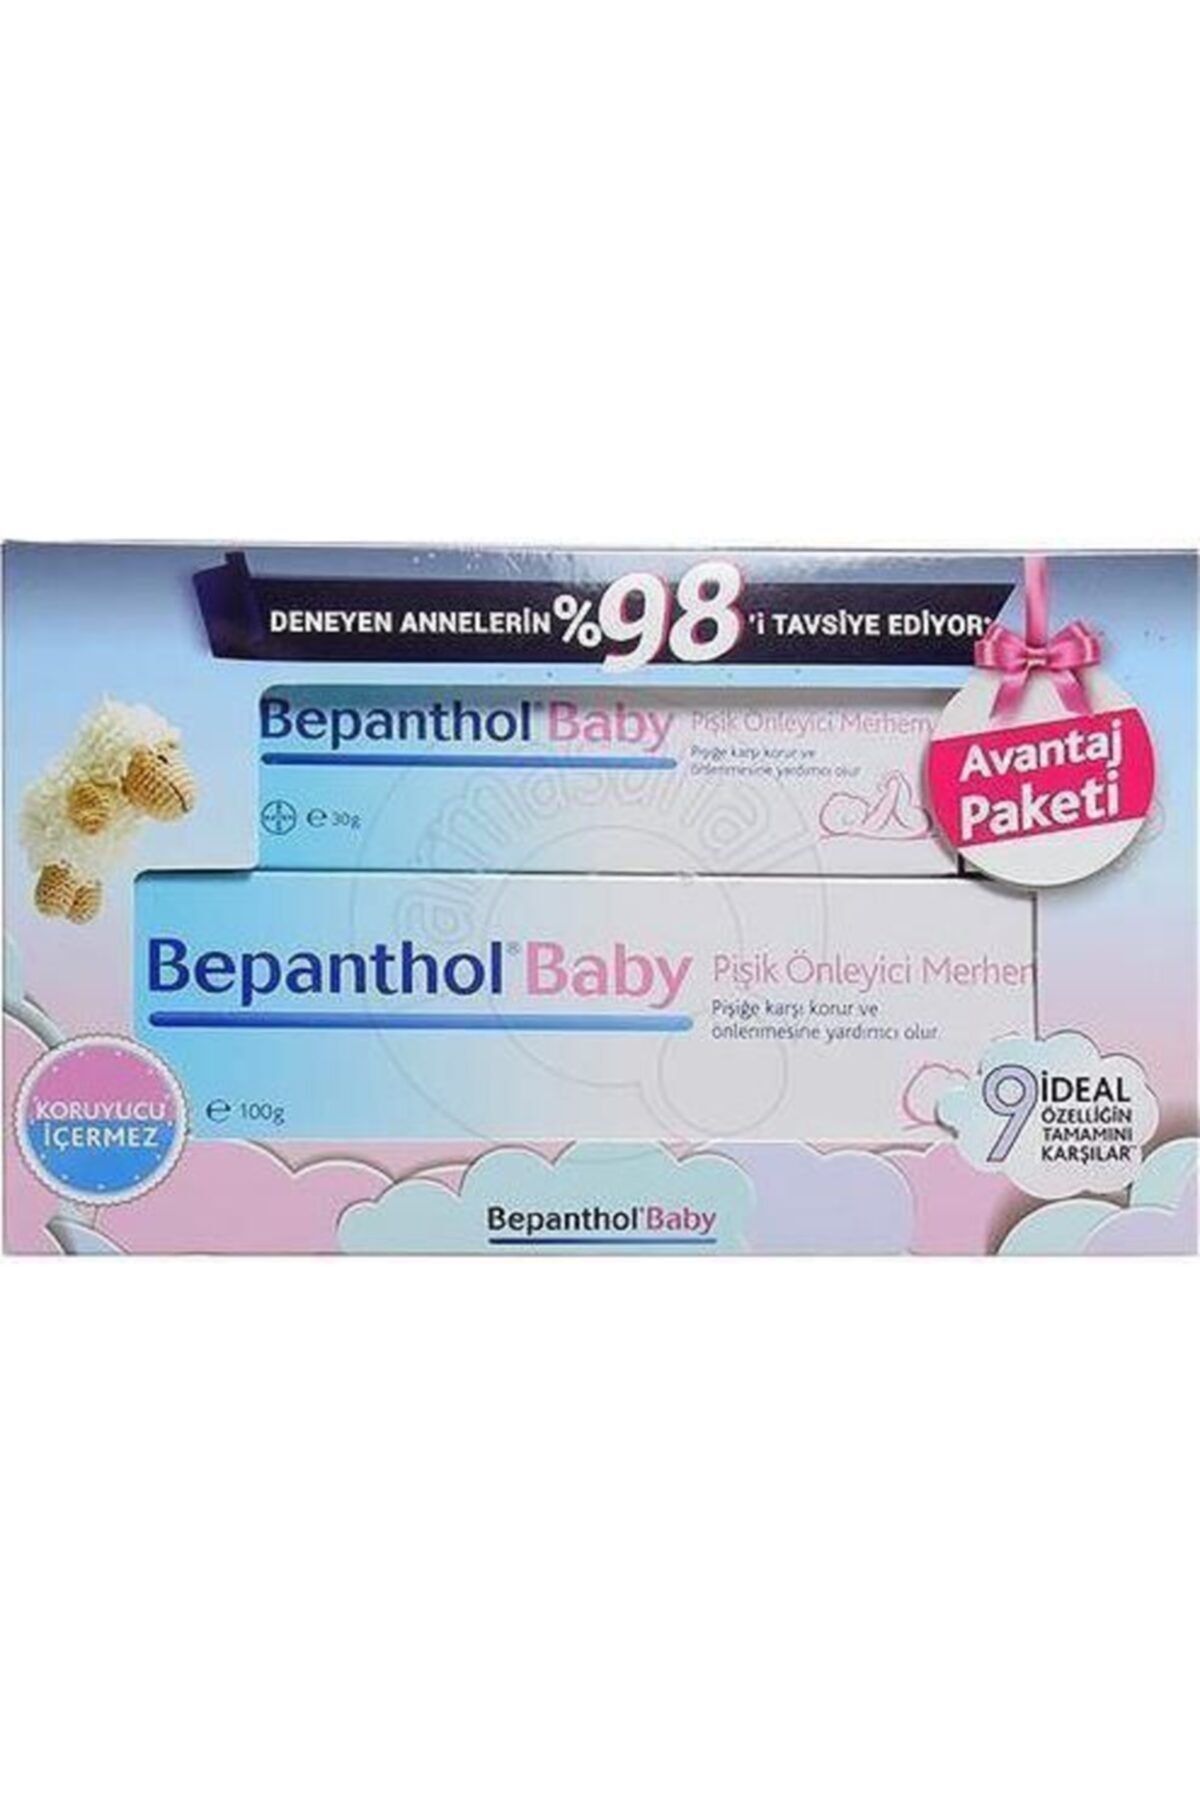 Bepanthol Baby Pişik Önleyici Merhem 100 Gr + 30 Gr Avantaj Paketi -baby Nappycare